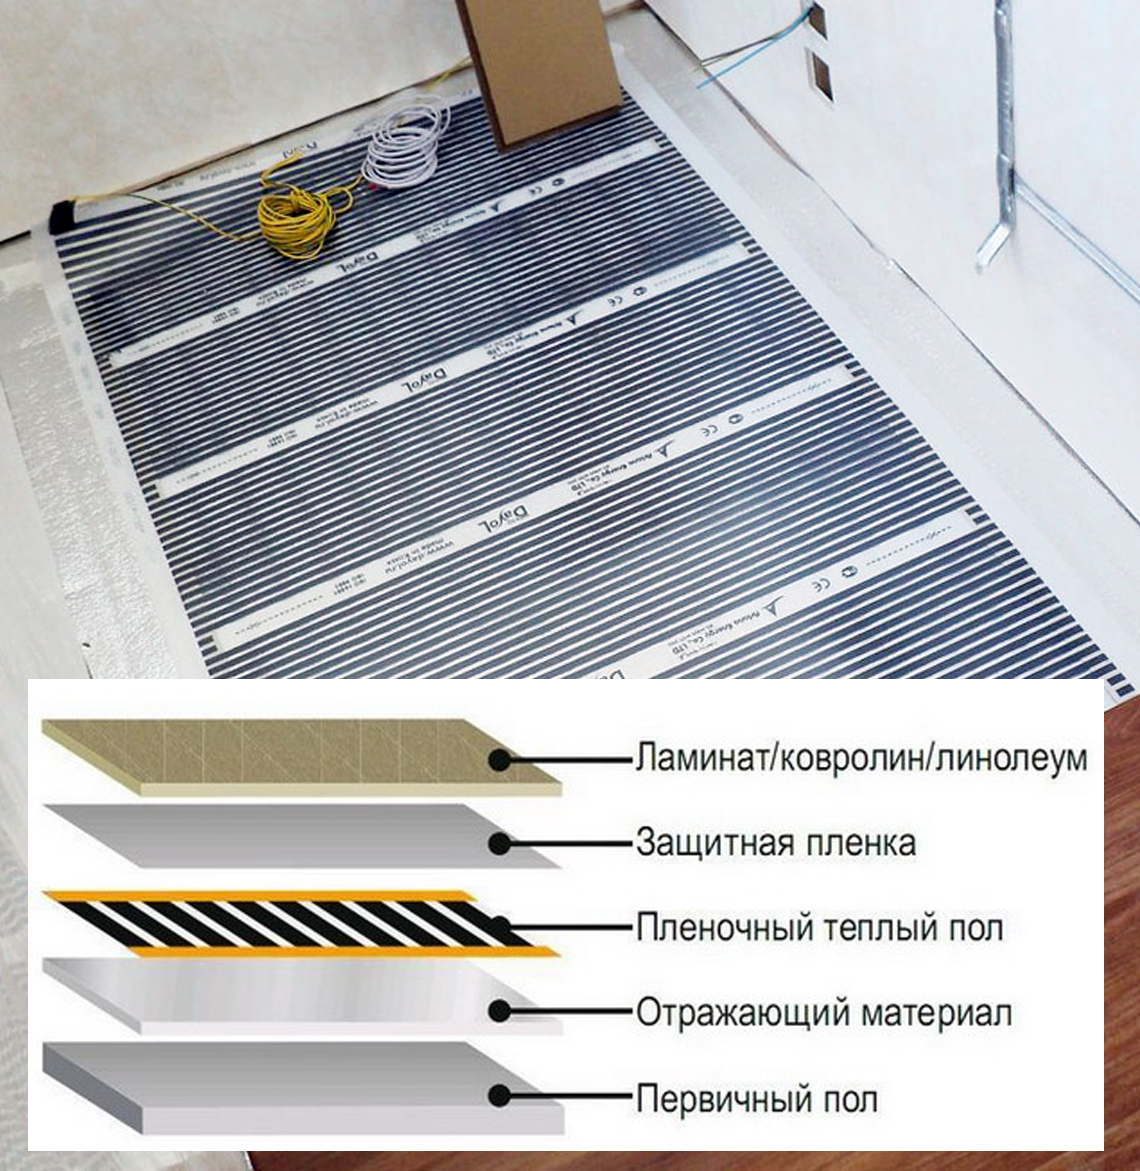 Электрический теплый пол под плитку: укладка и монтаж своими руками - строительство и ремонт